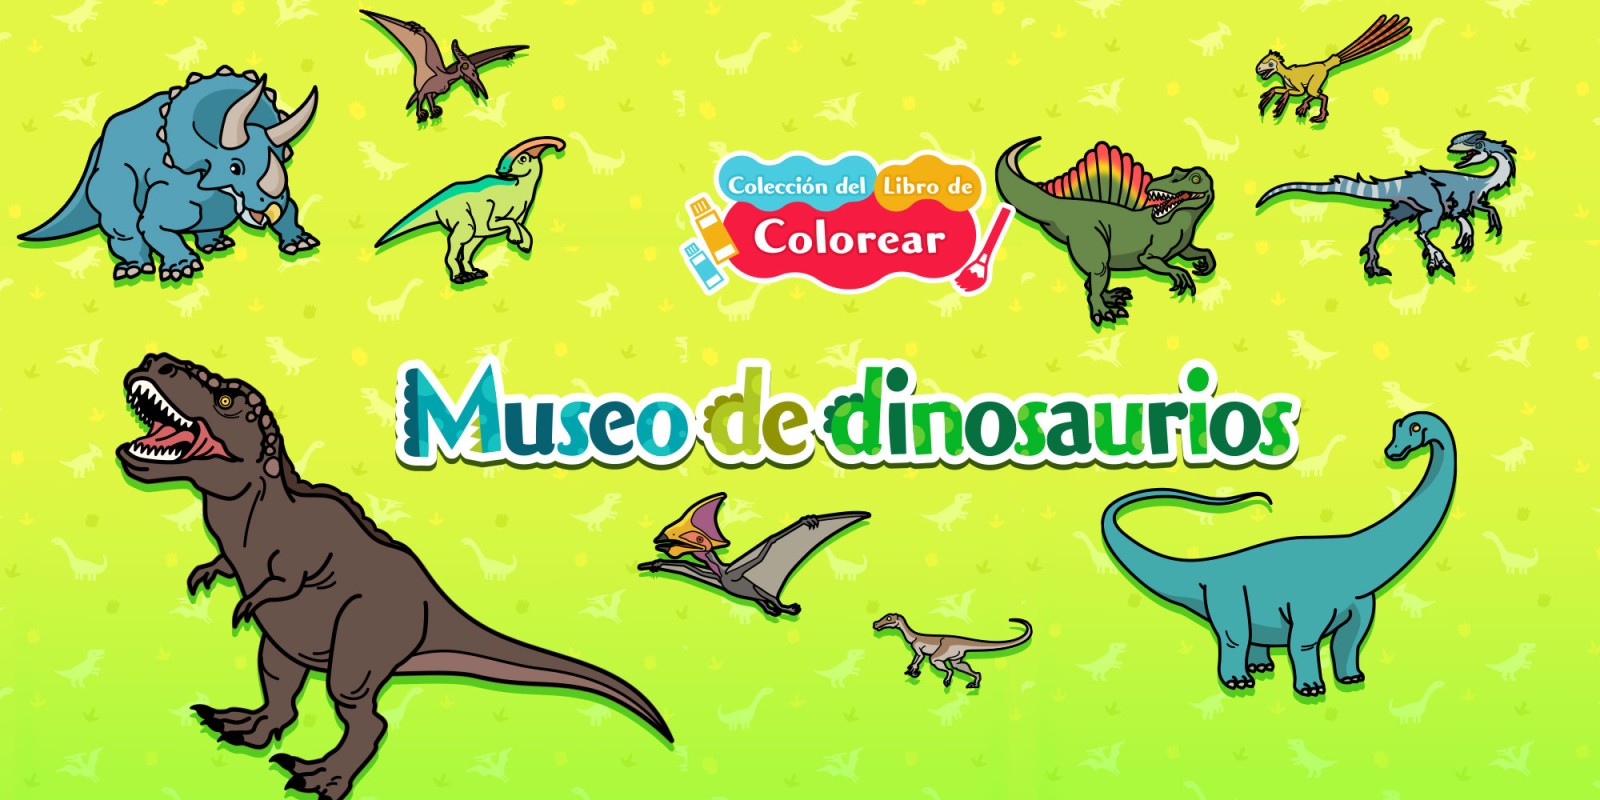 Colección del libro de colorear Museo de dinosaurios